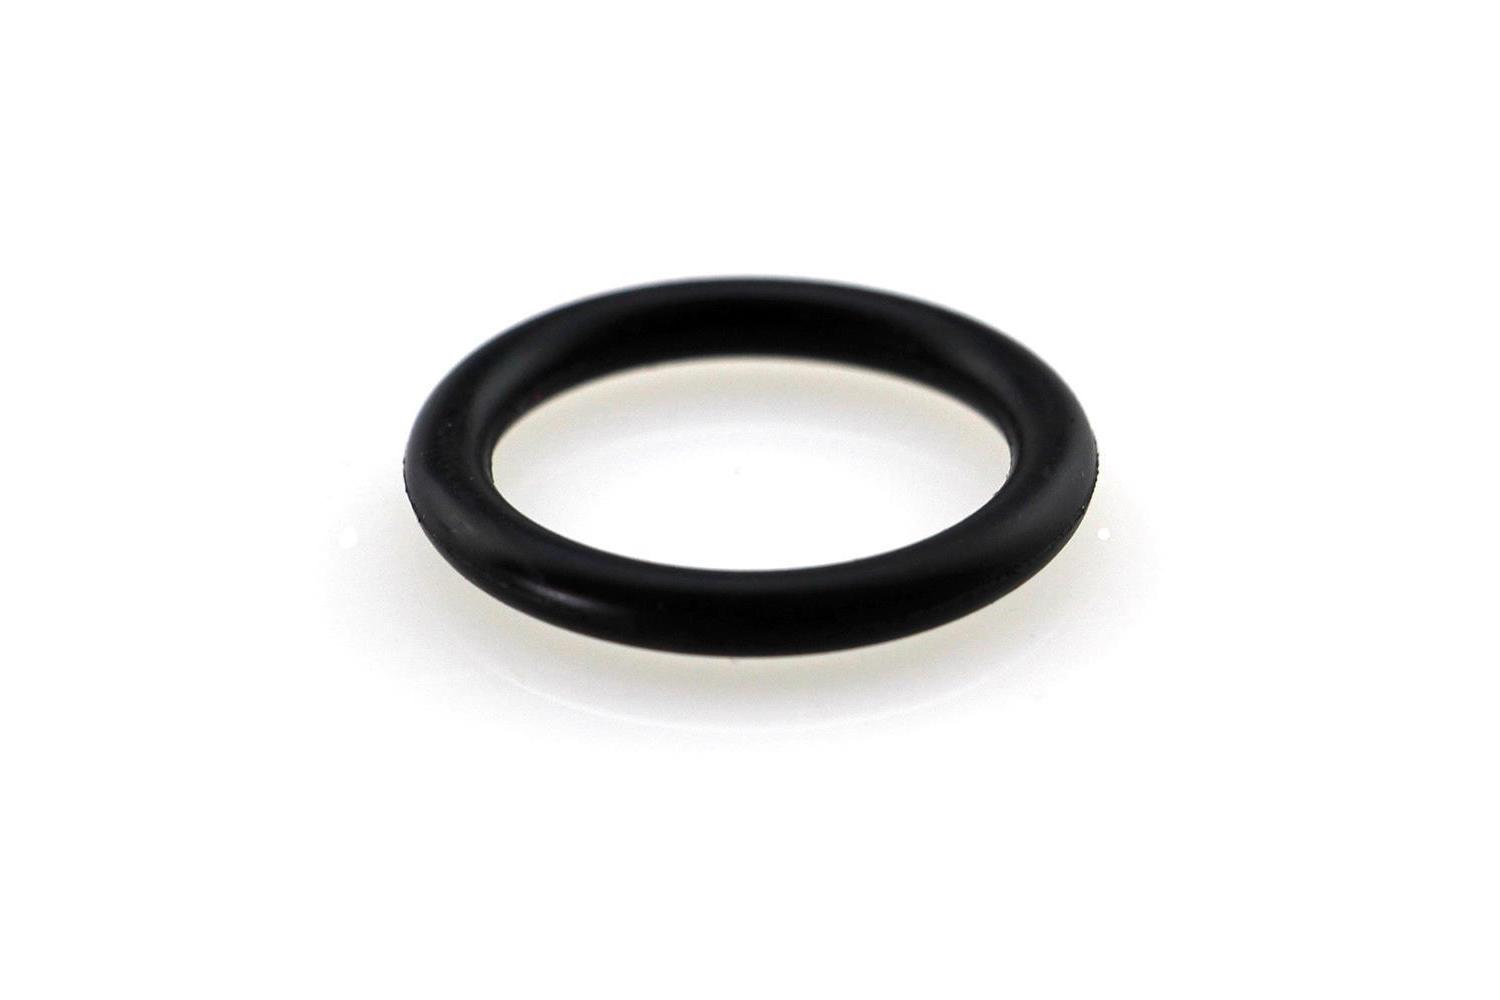 O-Ring Dichtung für PE-Klemmverbinder 110 mm